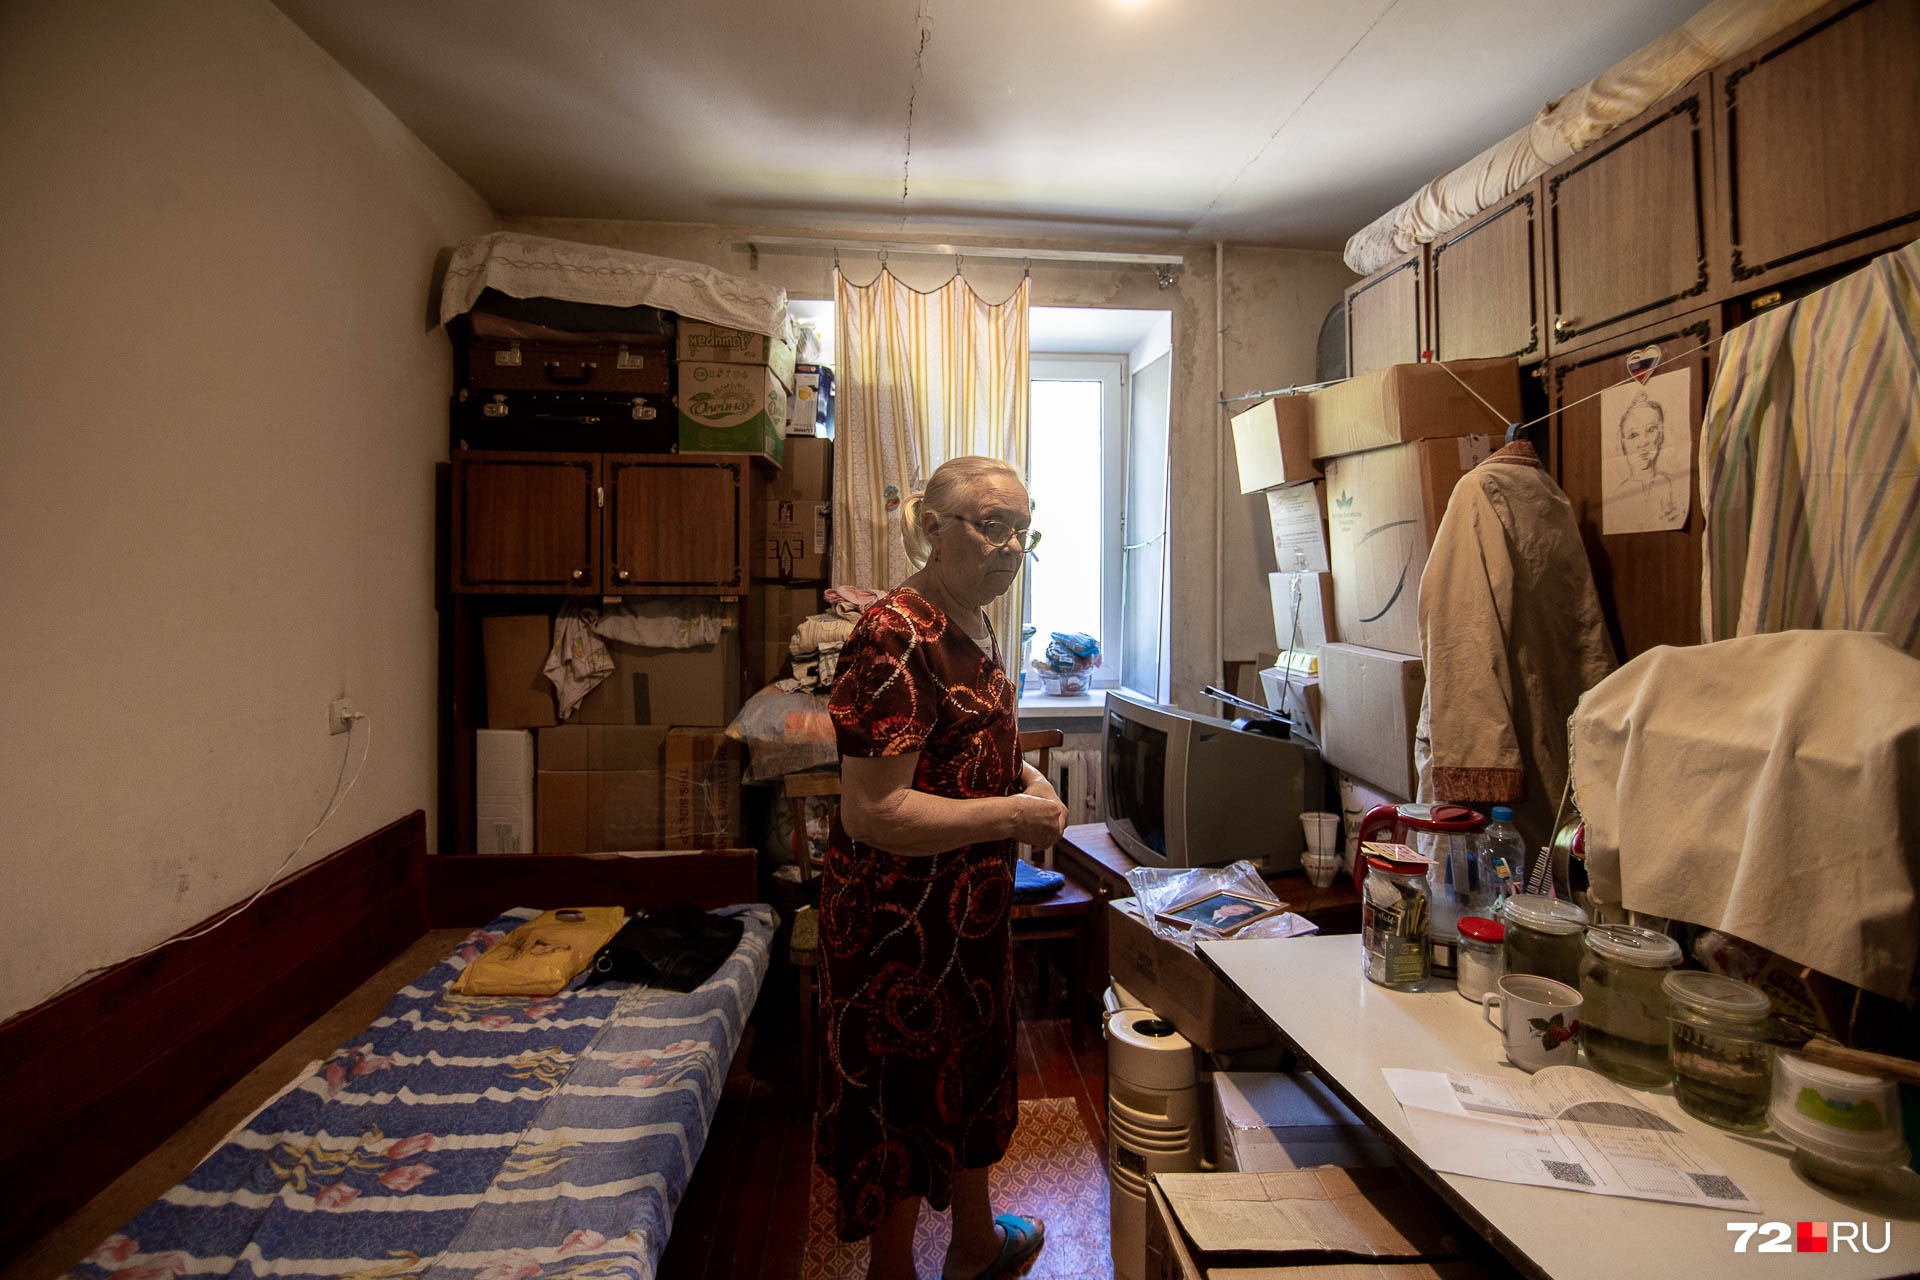 Сания Искандаровна живет на пенсию 14 тысяч рублей. Денег с трудом хватает на еду и коммуналку